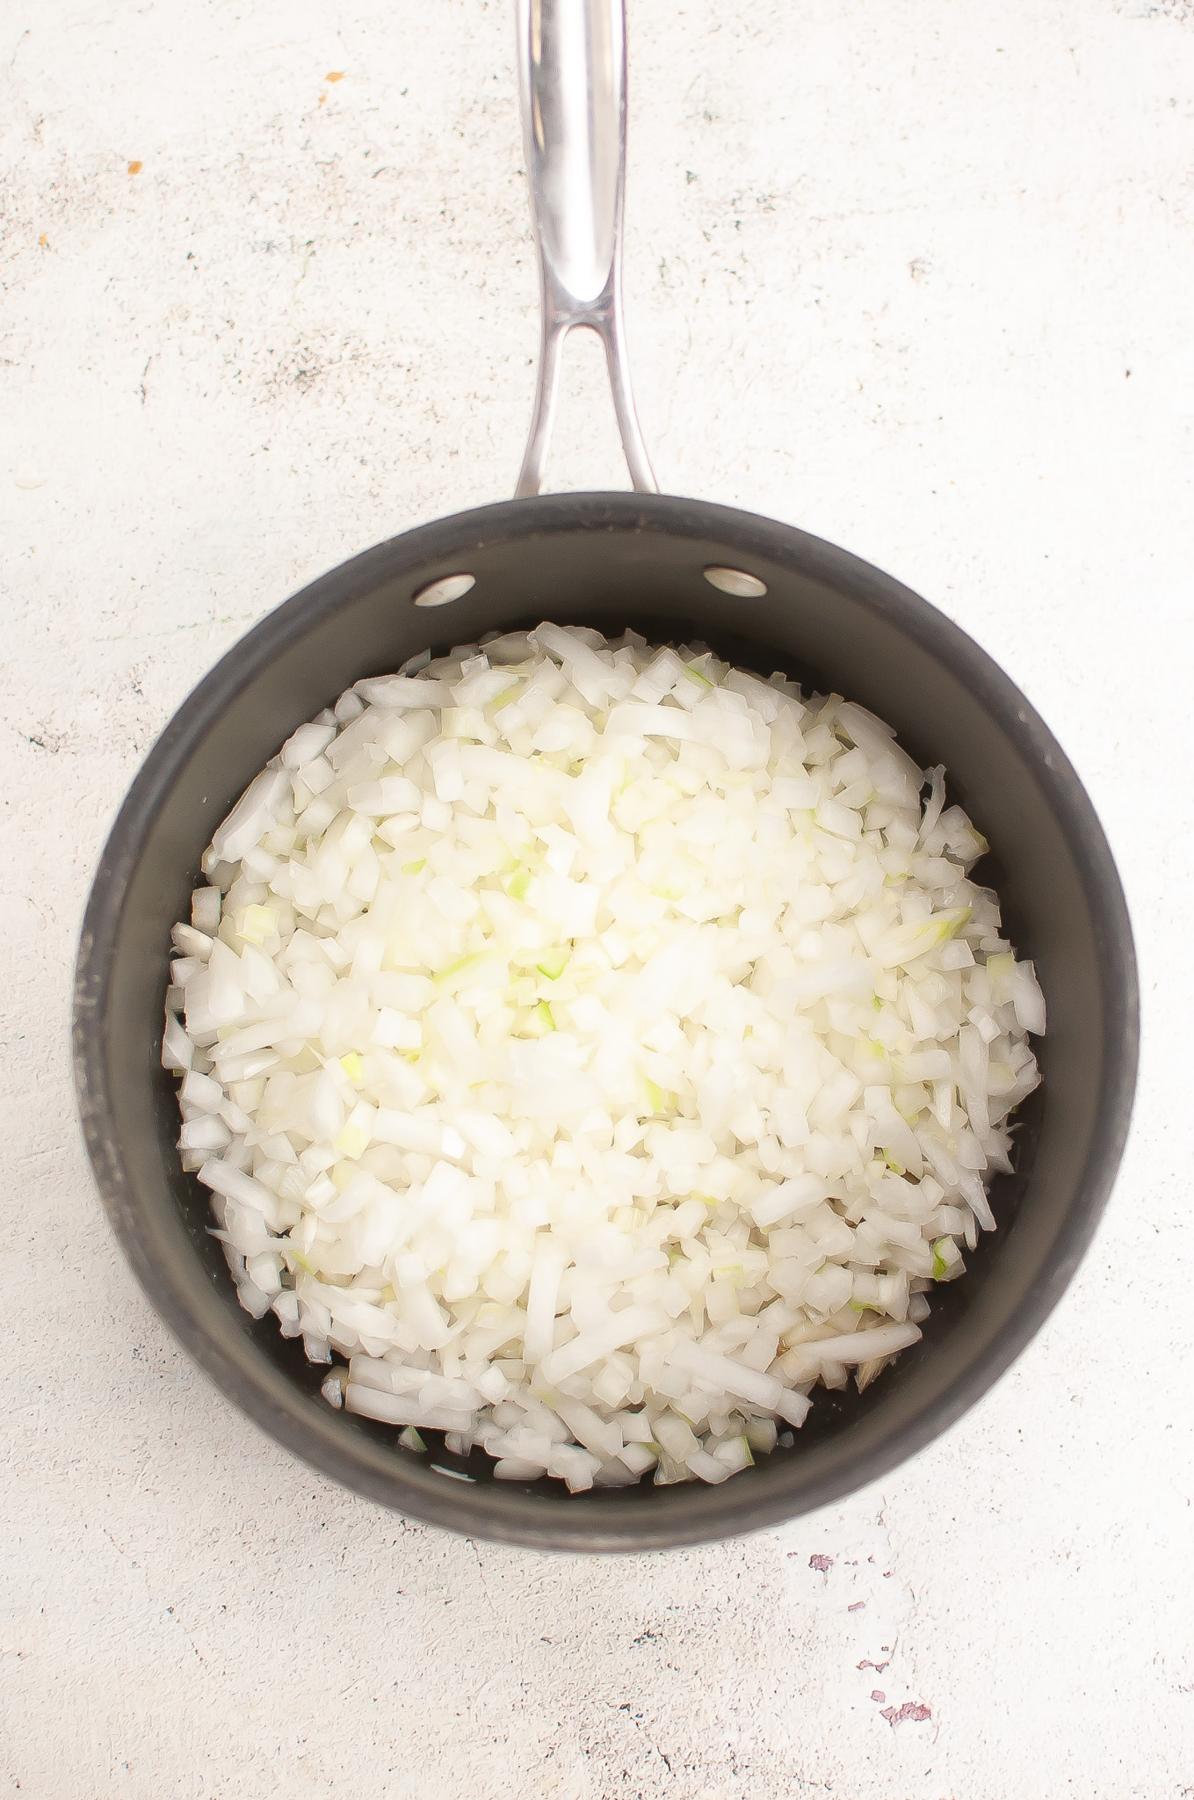 Diced onion is saucepan.